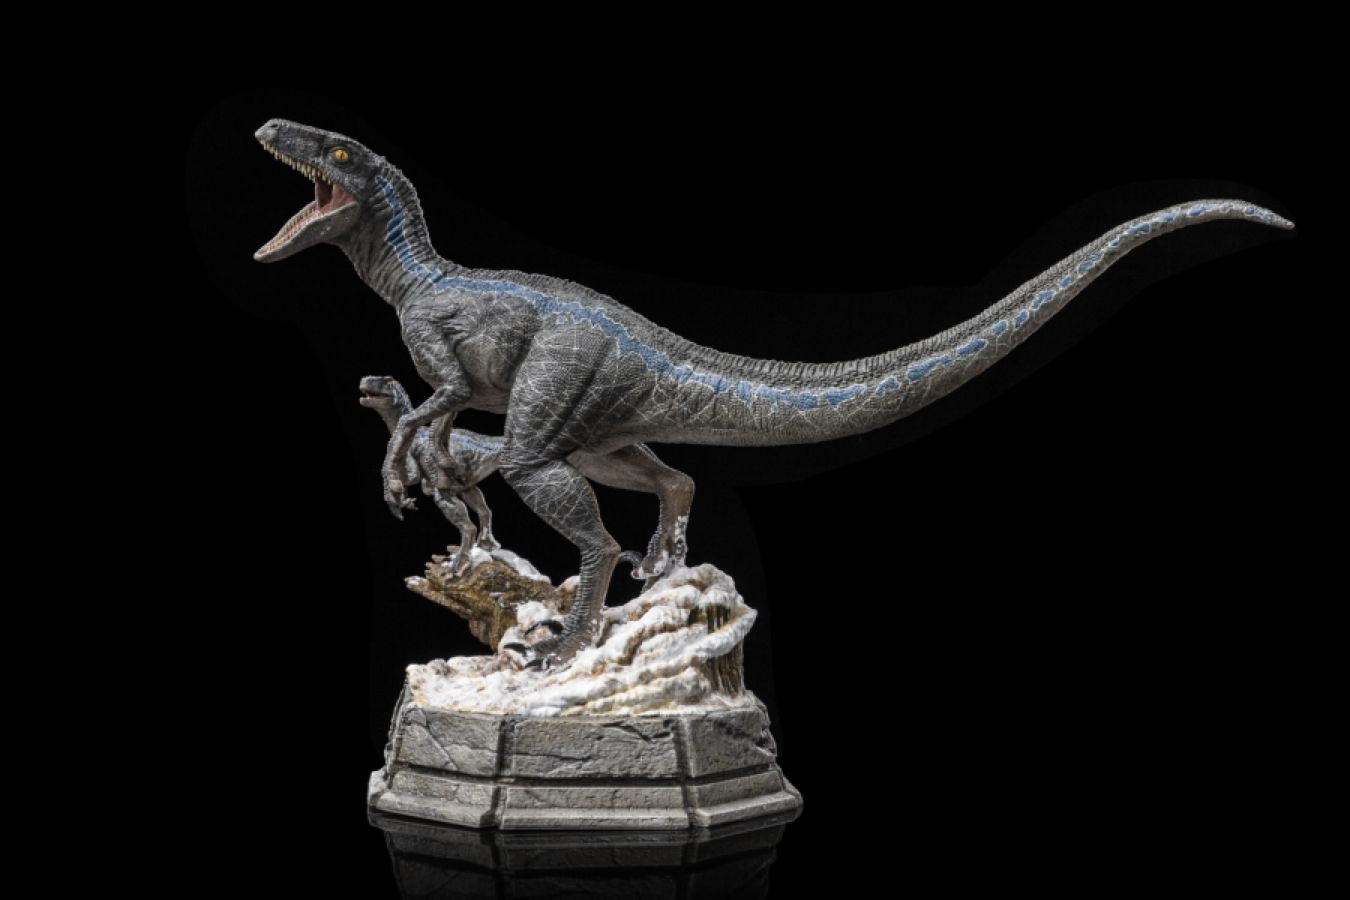 Jurassic World 3: Dominion - Blue & Beta 1:10 Scale Statue